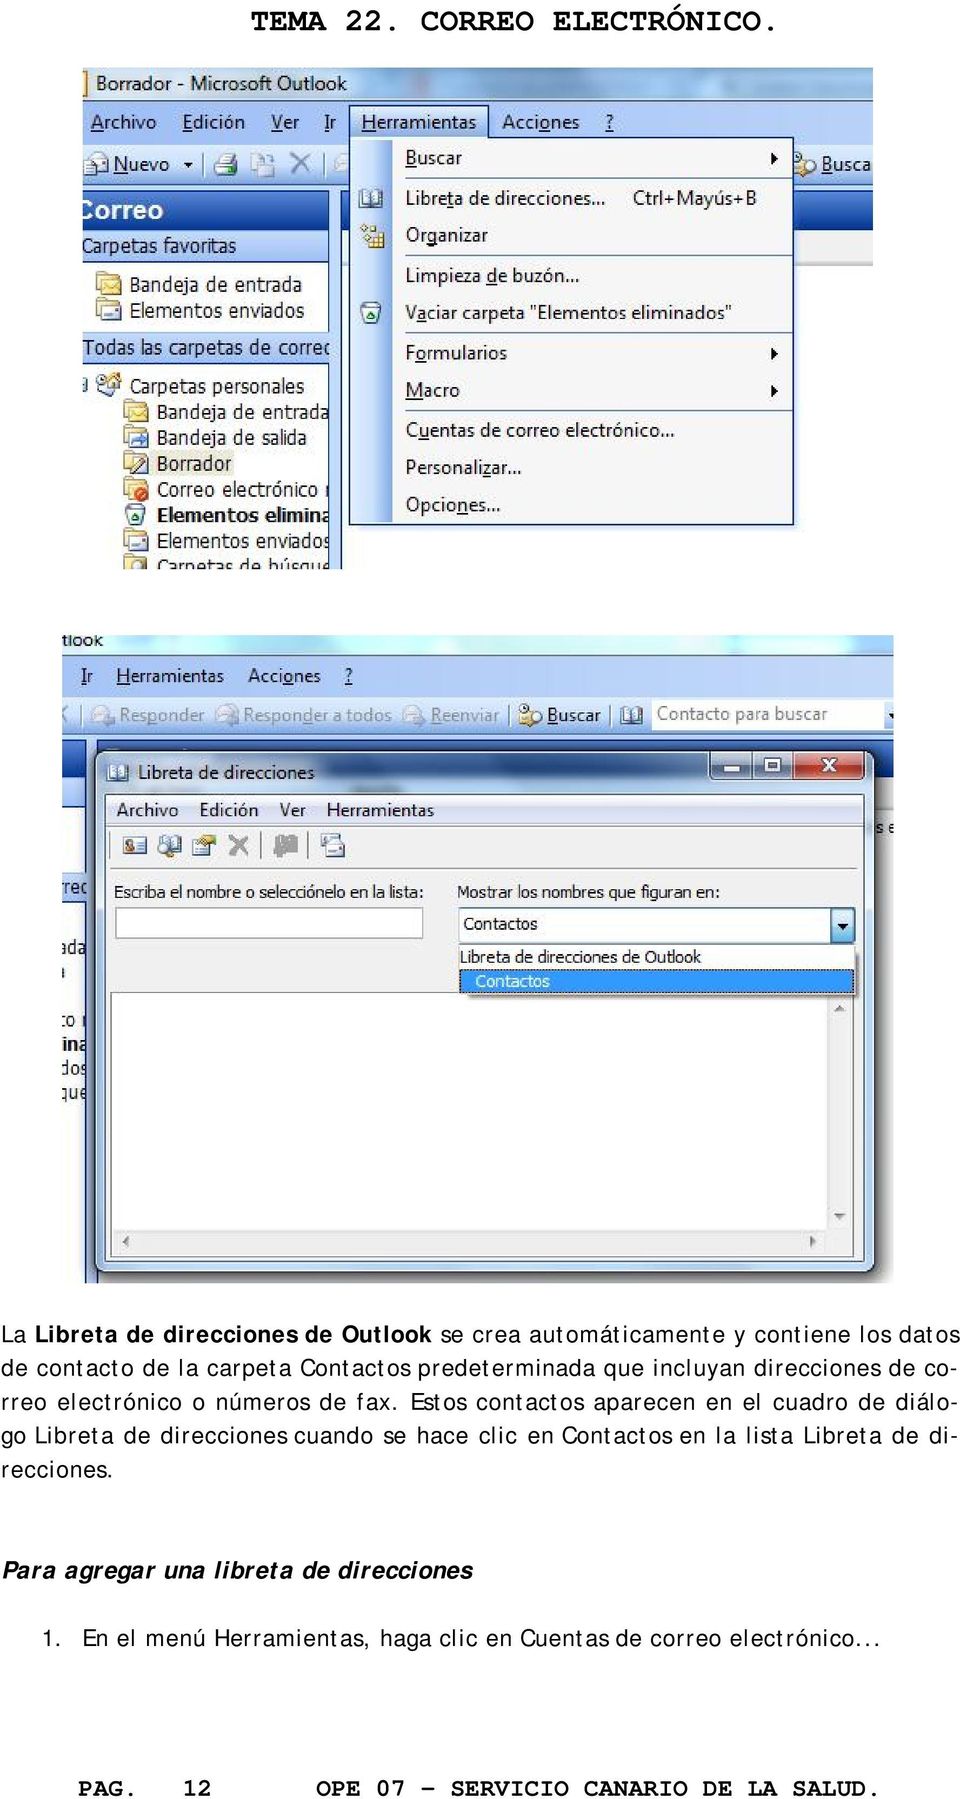 Estos contactos aparecen en el cuadro de diálogo Libreta de direcciones cuando se hace clic en Contactos en la lista Libreta